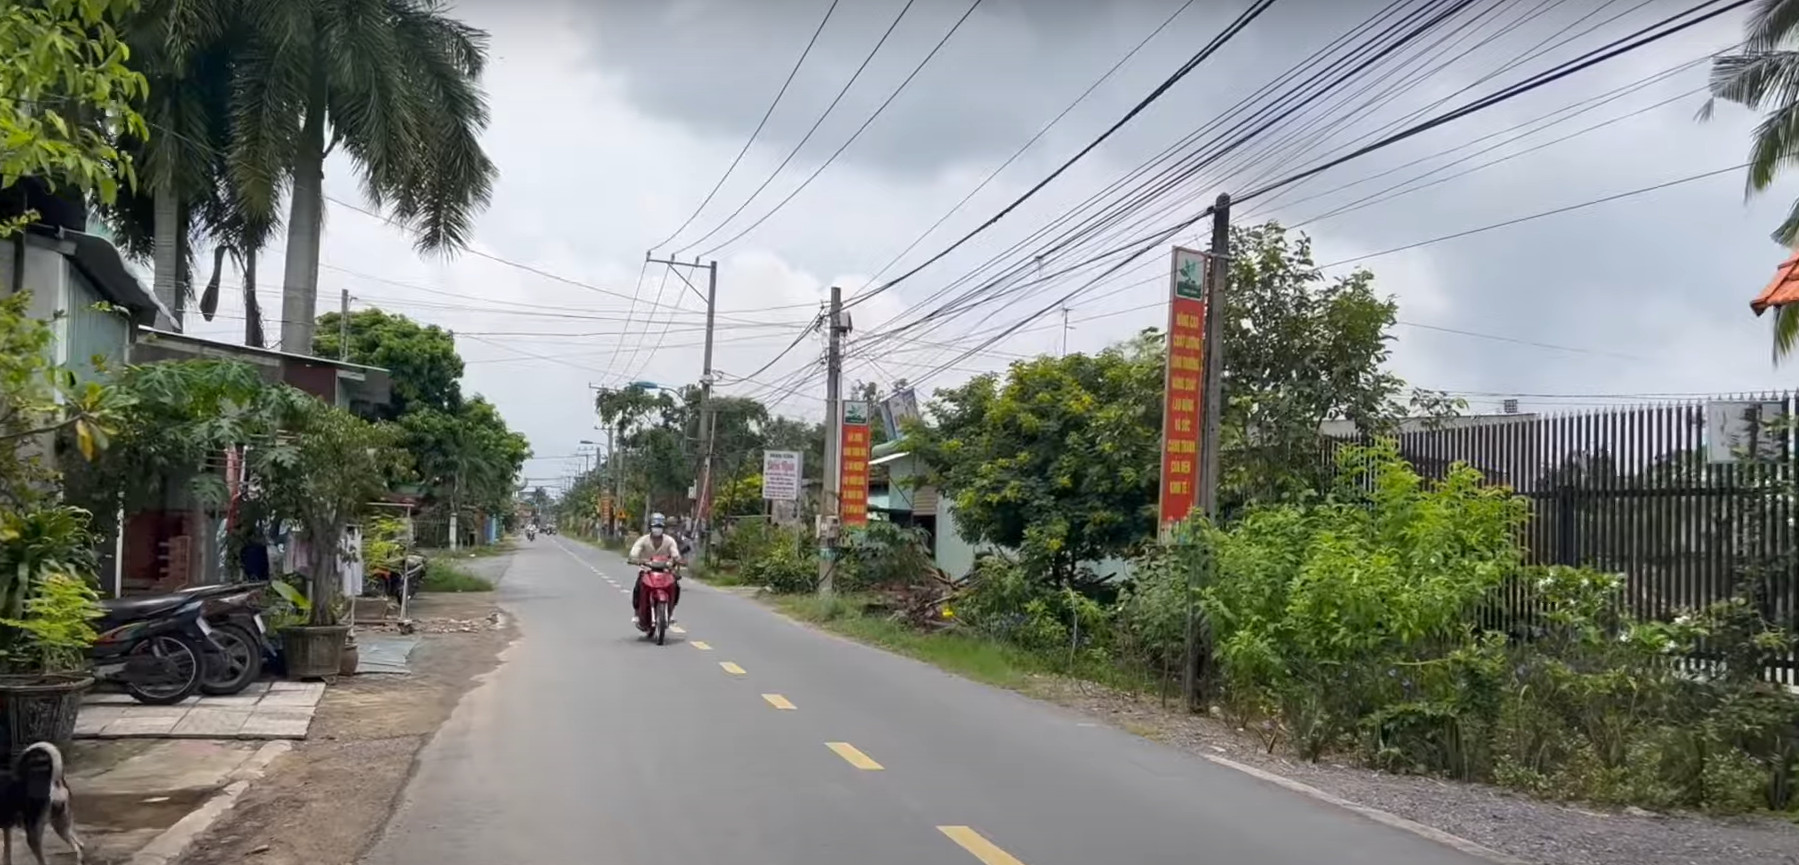 Bán đất mặt tiền đường Võ Thị Sáu Nhơn Trạch